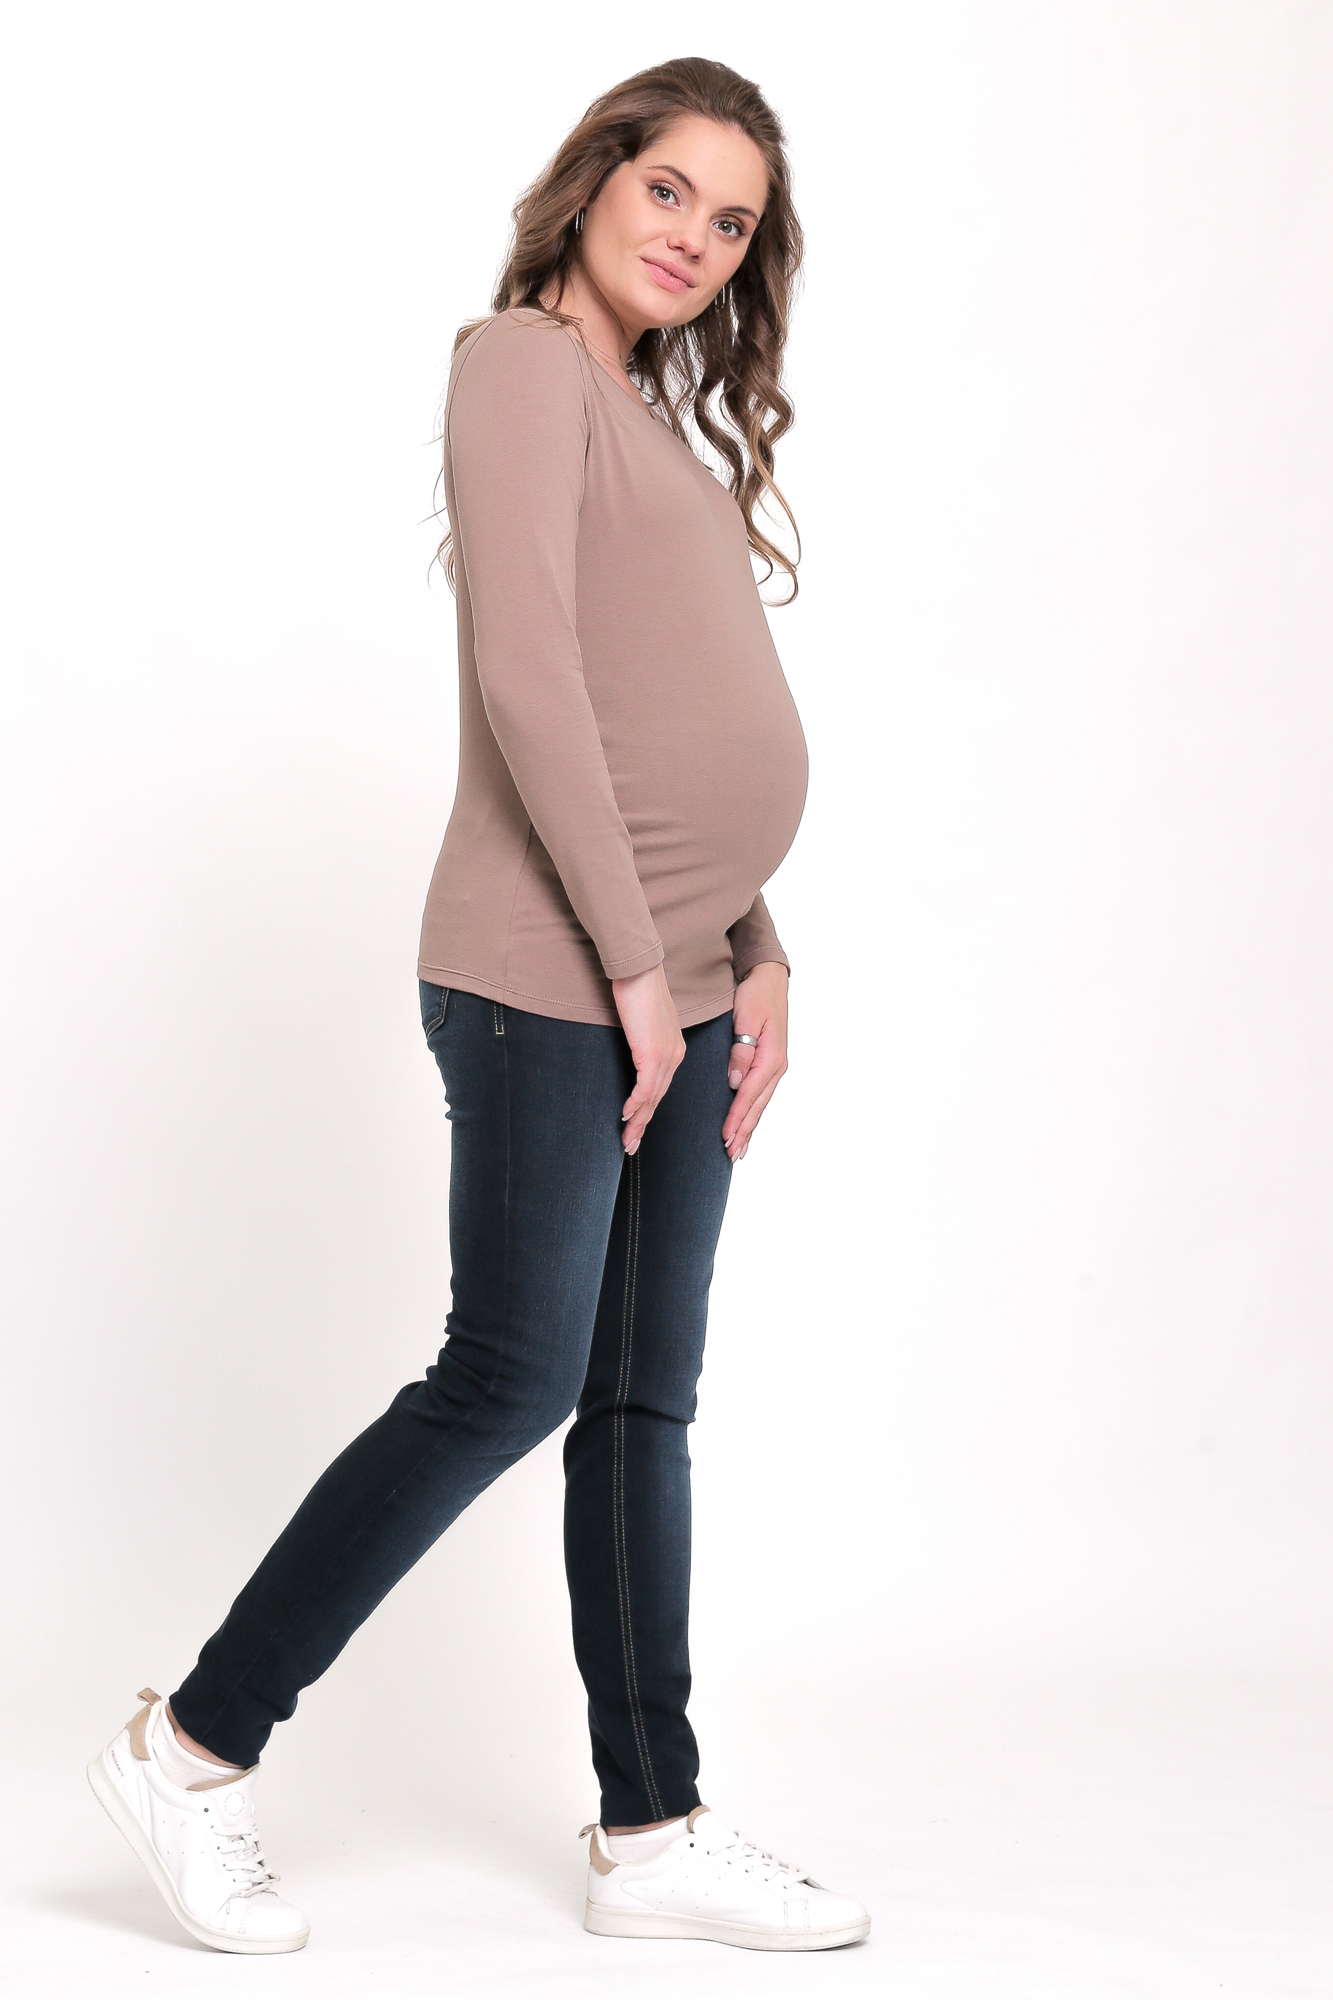 Джинсы для беременных: как сделать, как носить, как выбрать